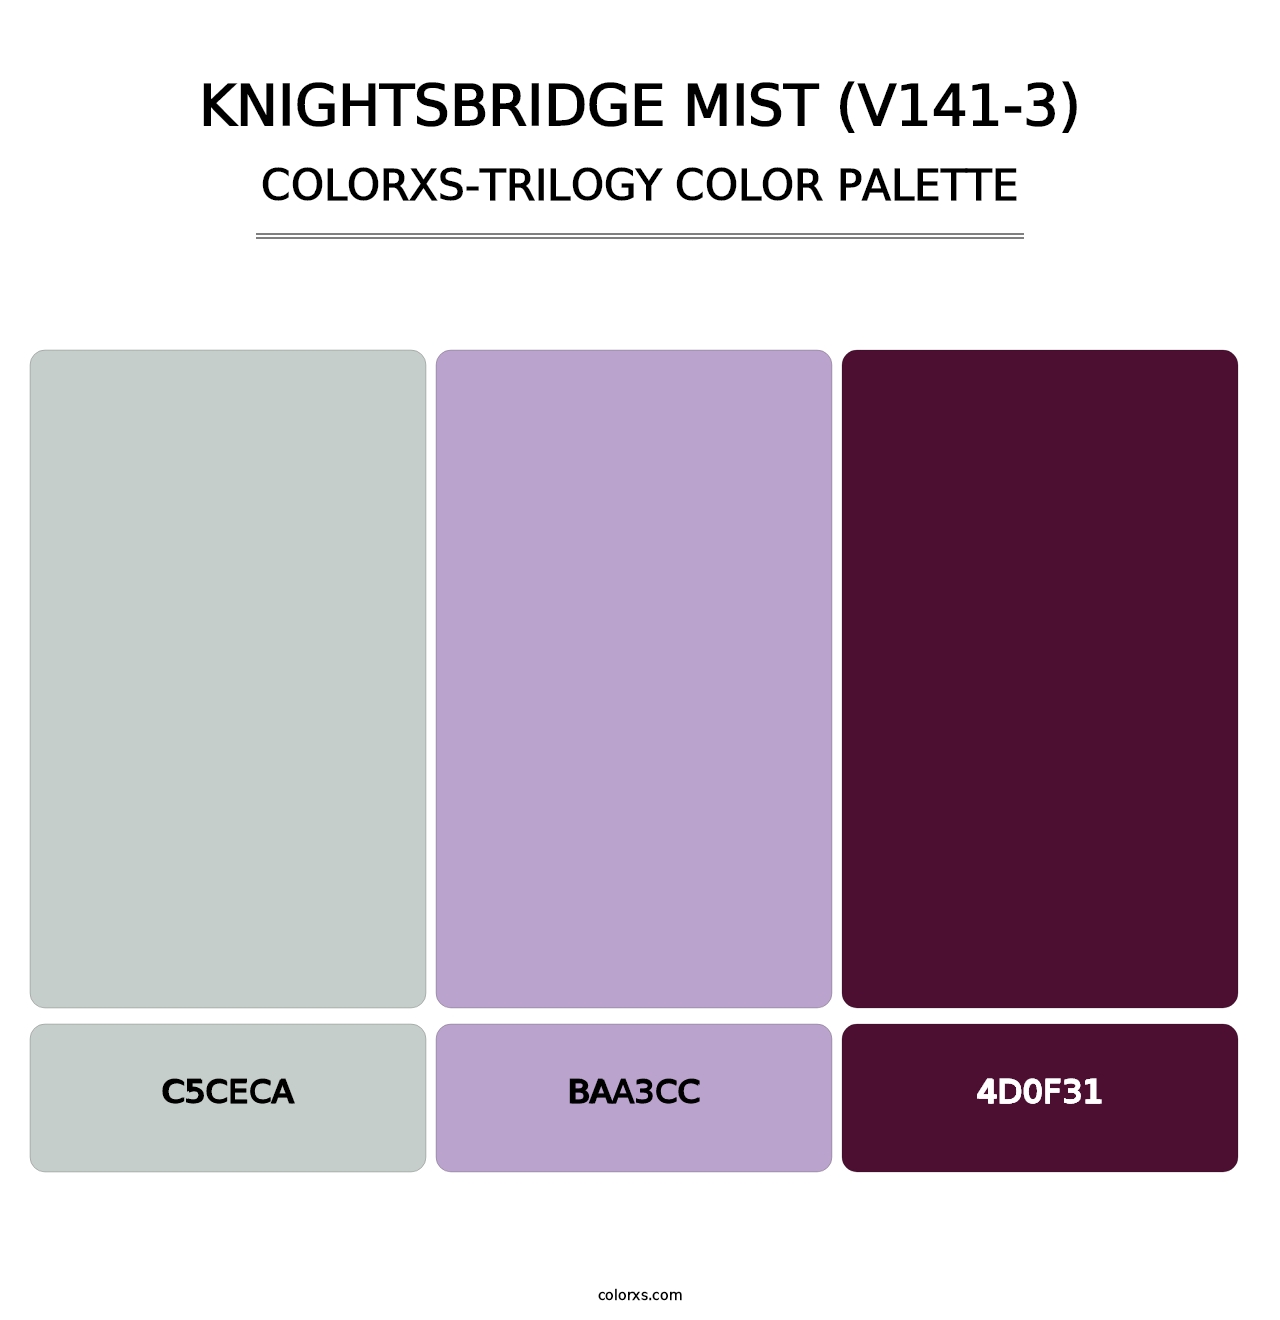 Knightsbridge Mist (V141-3) - Colorxs Trilogy Palette